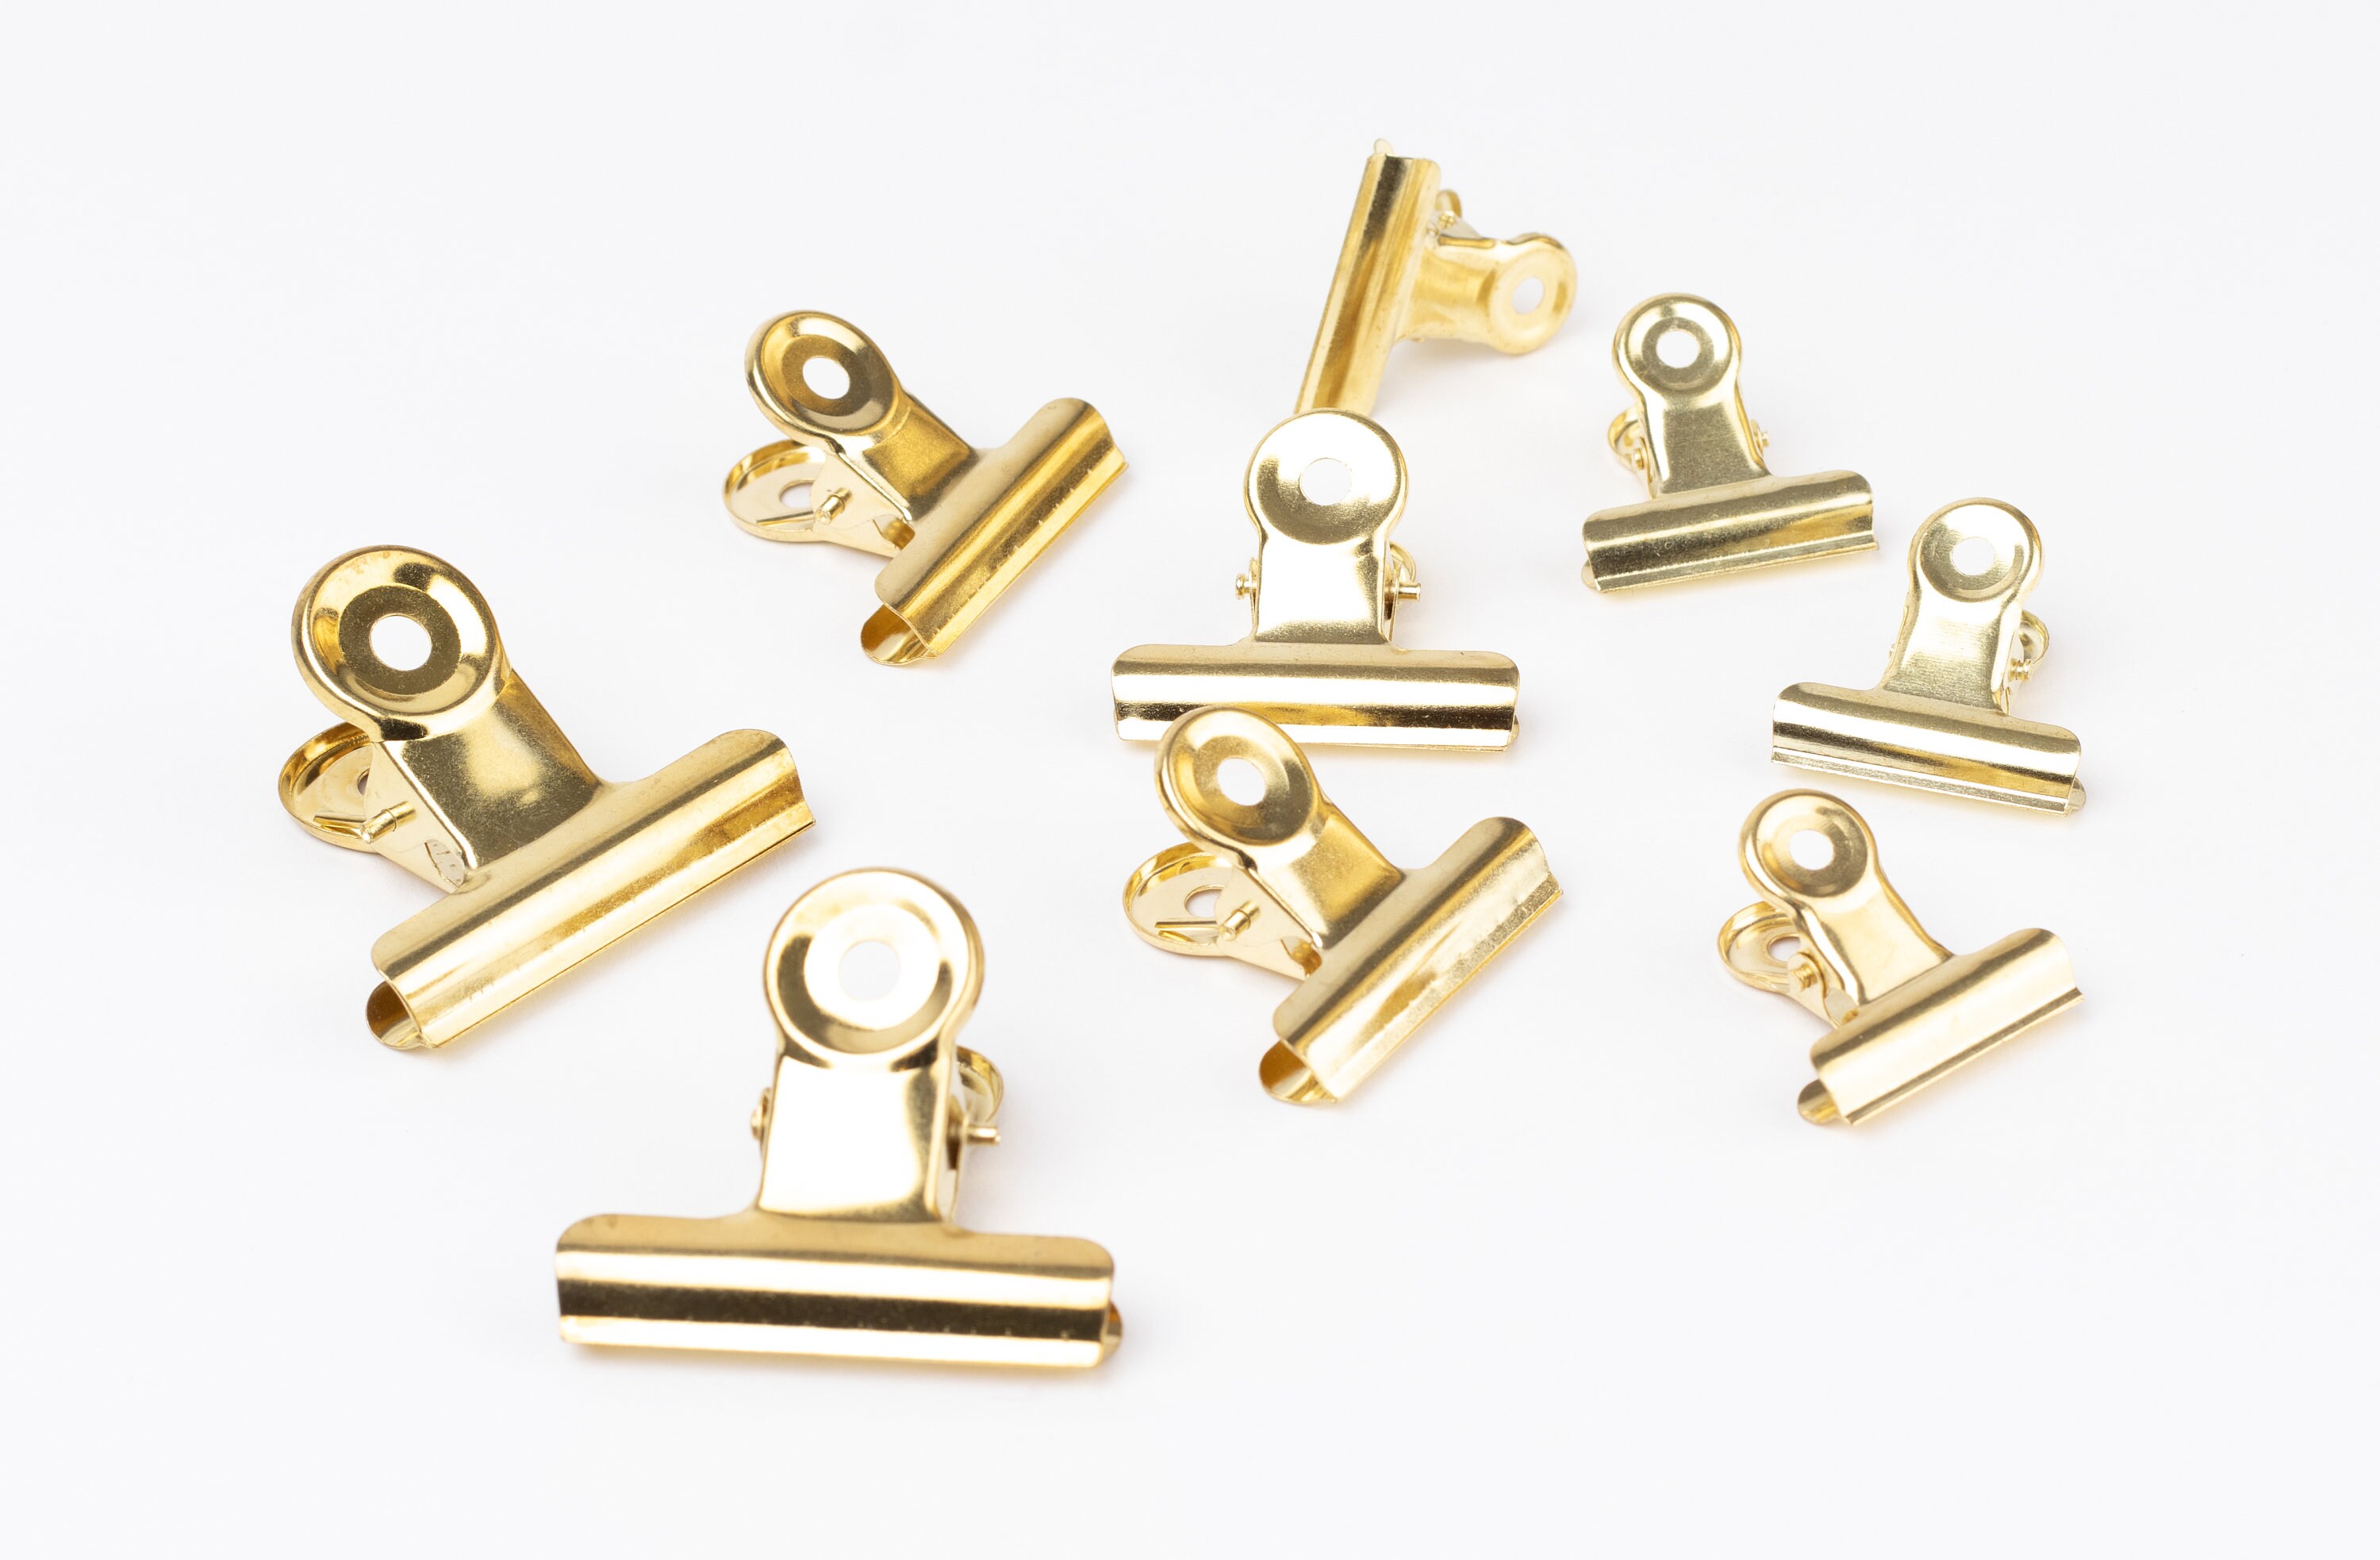 Metall Klammern in Gold und Kupfer wählbar, verpackt mit 12 Stück | NaDeco